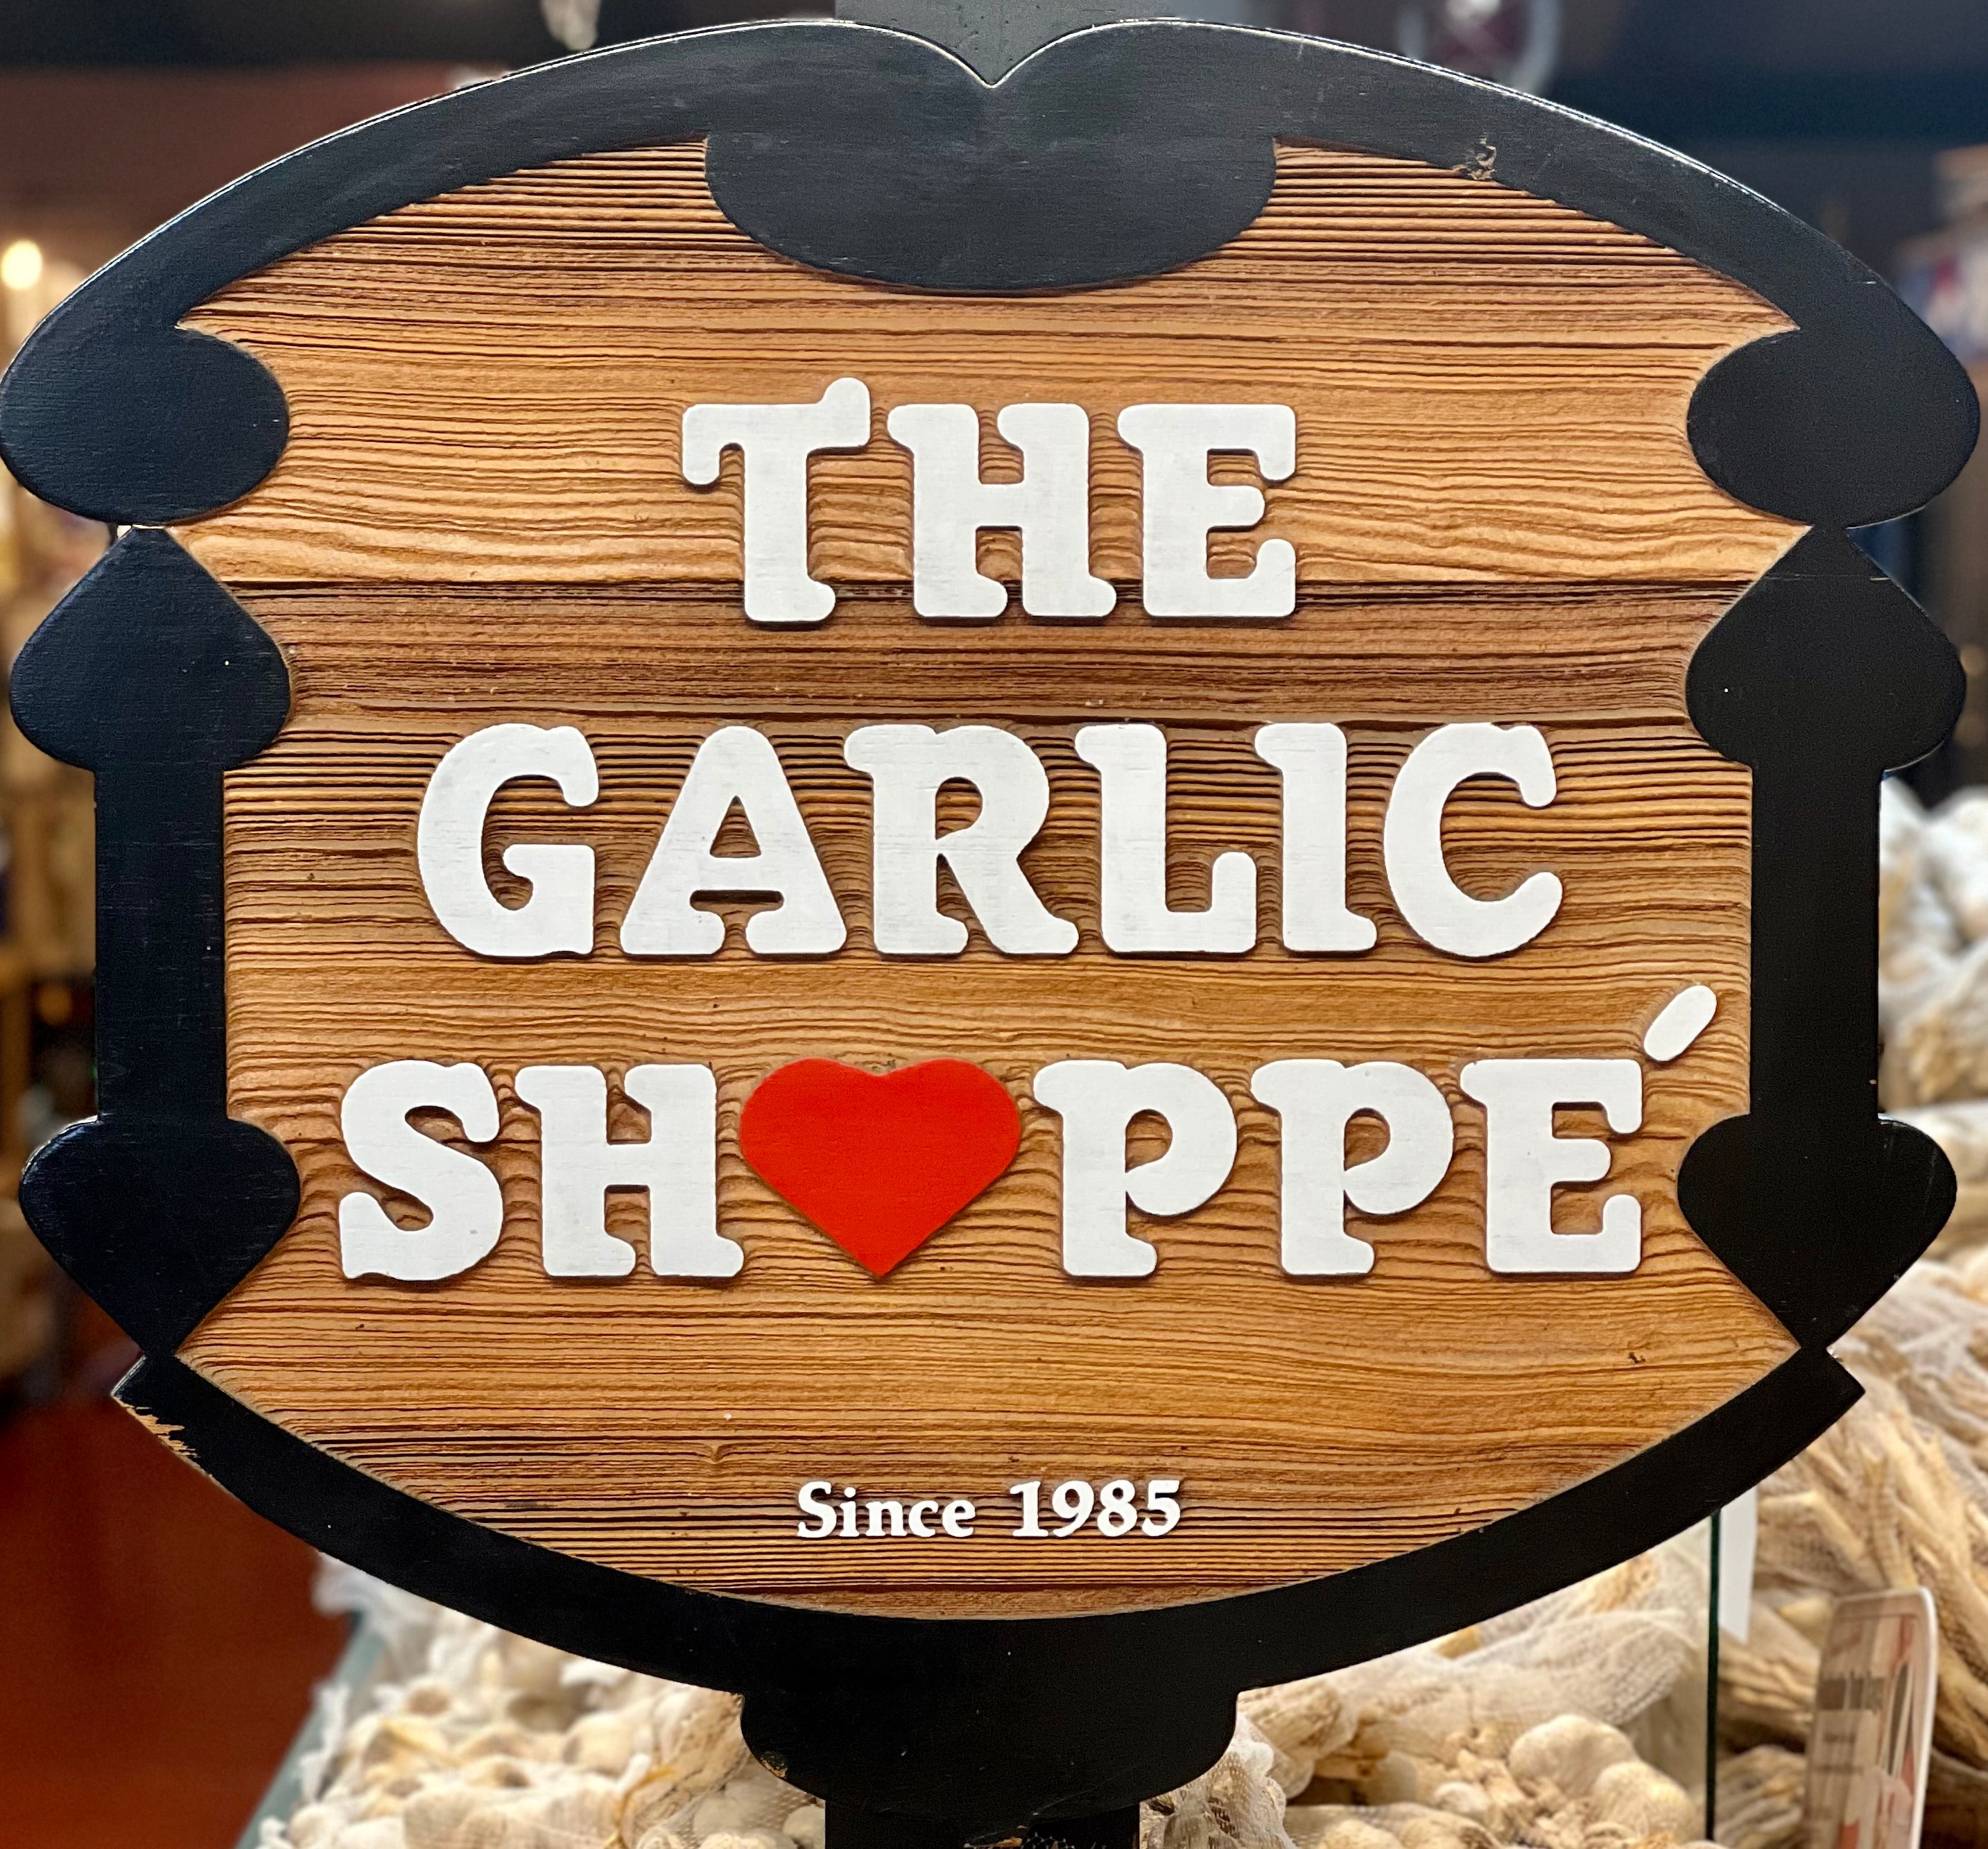 GarlicShoppe.com